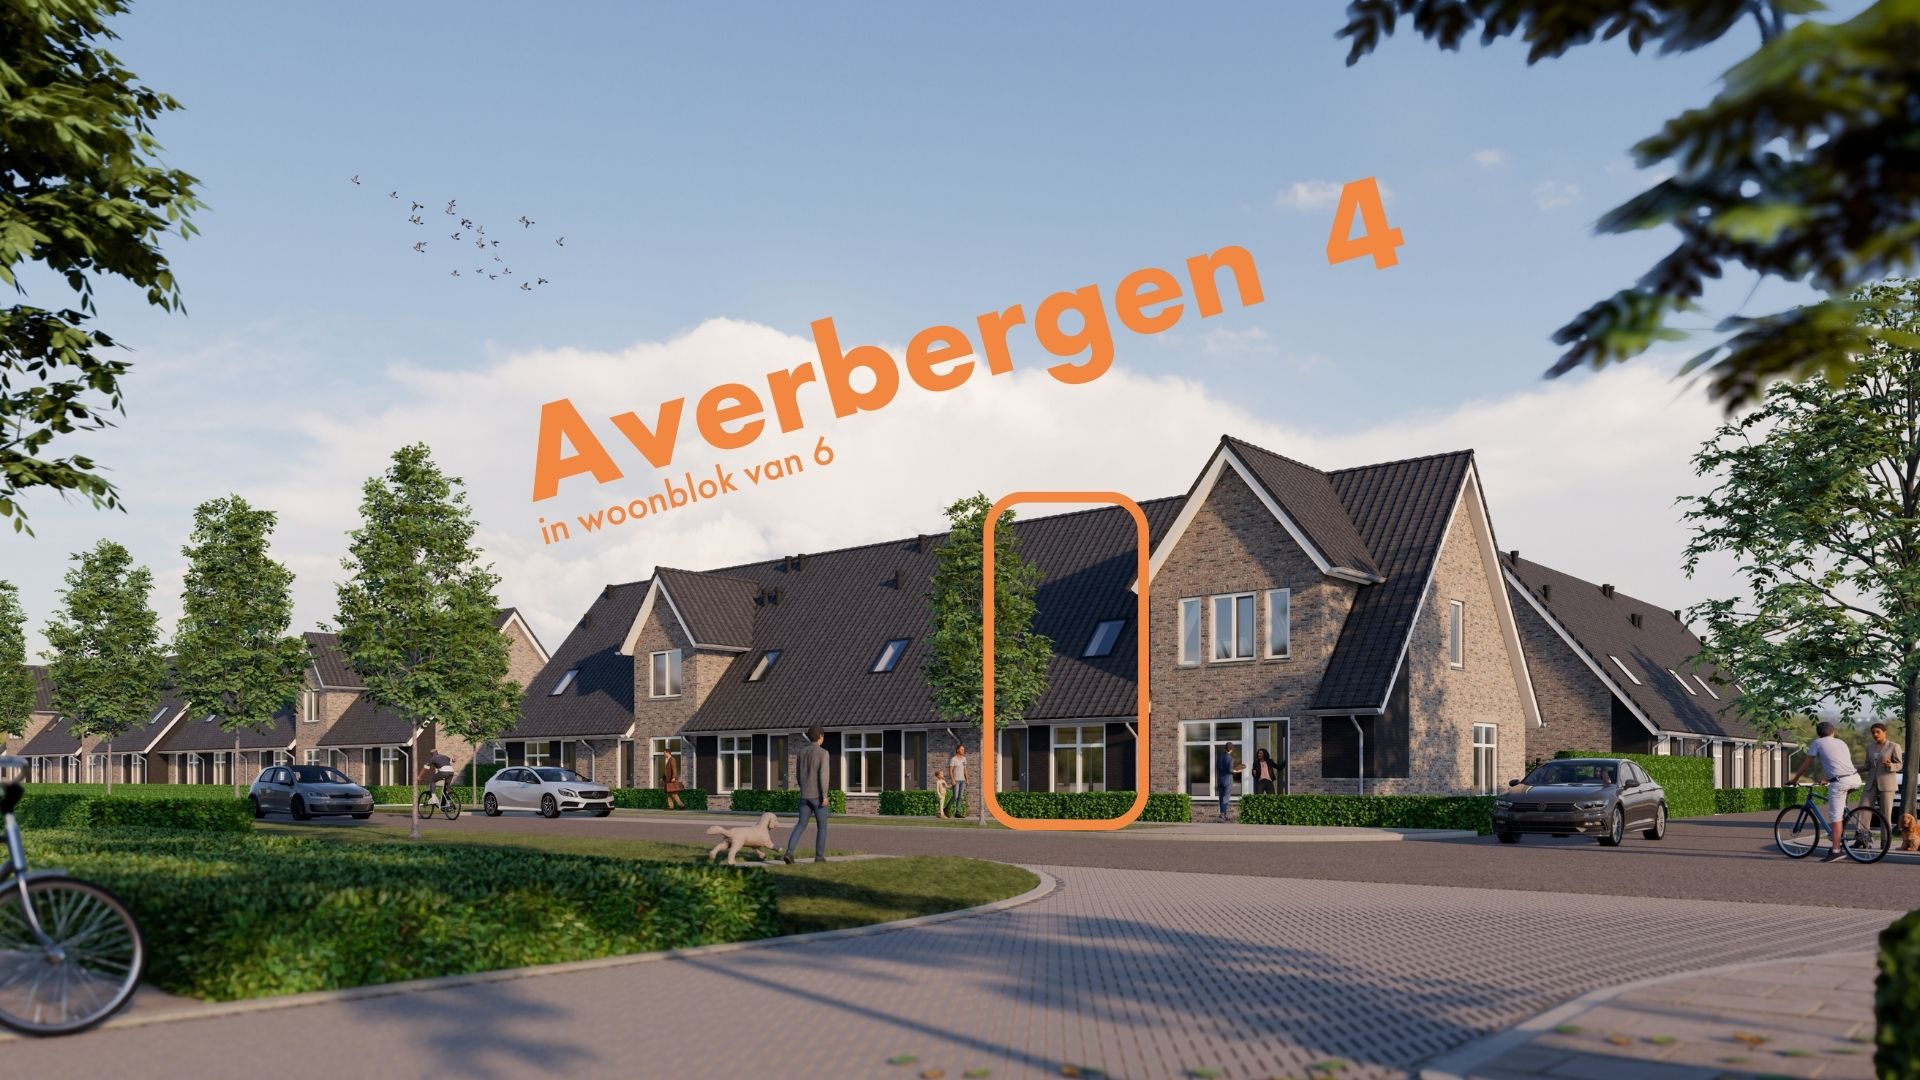 Averbergen 4, 8121 CE Olst, Nederland